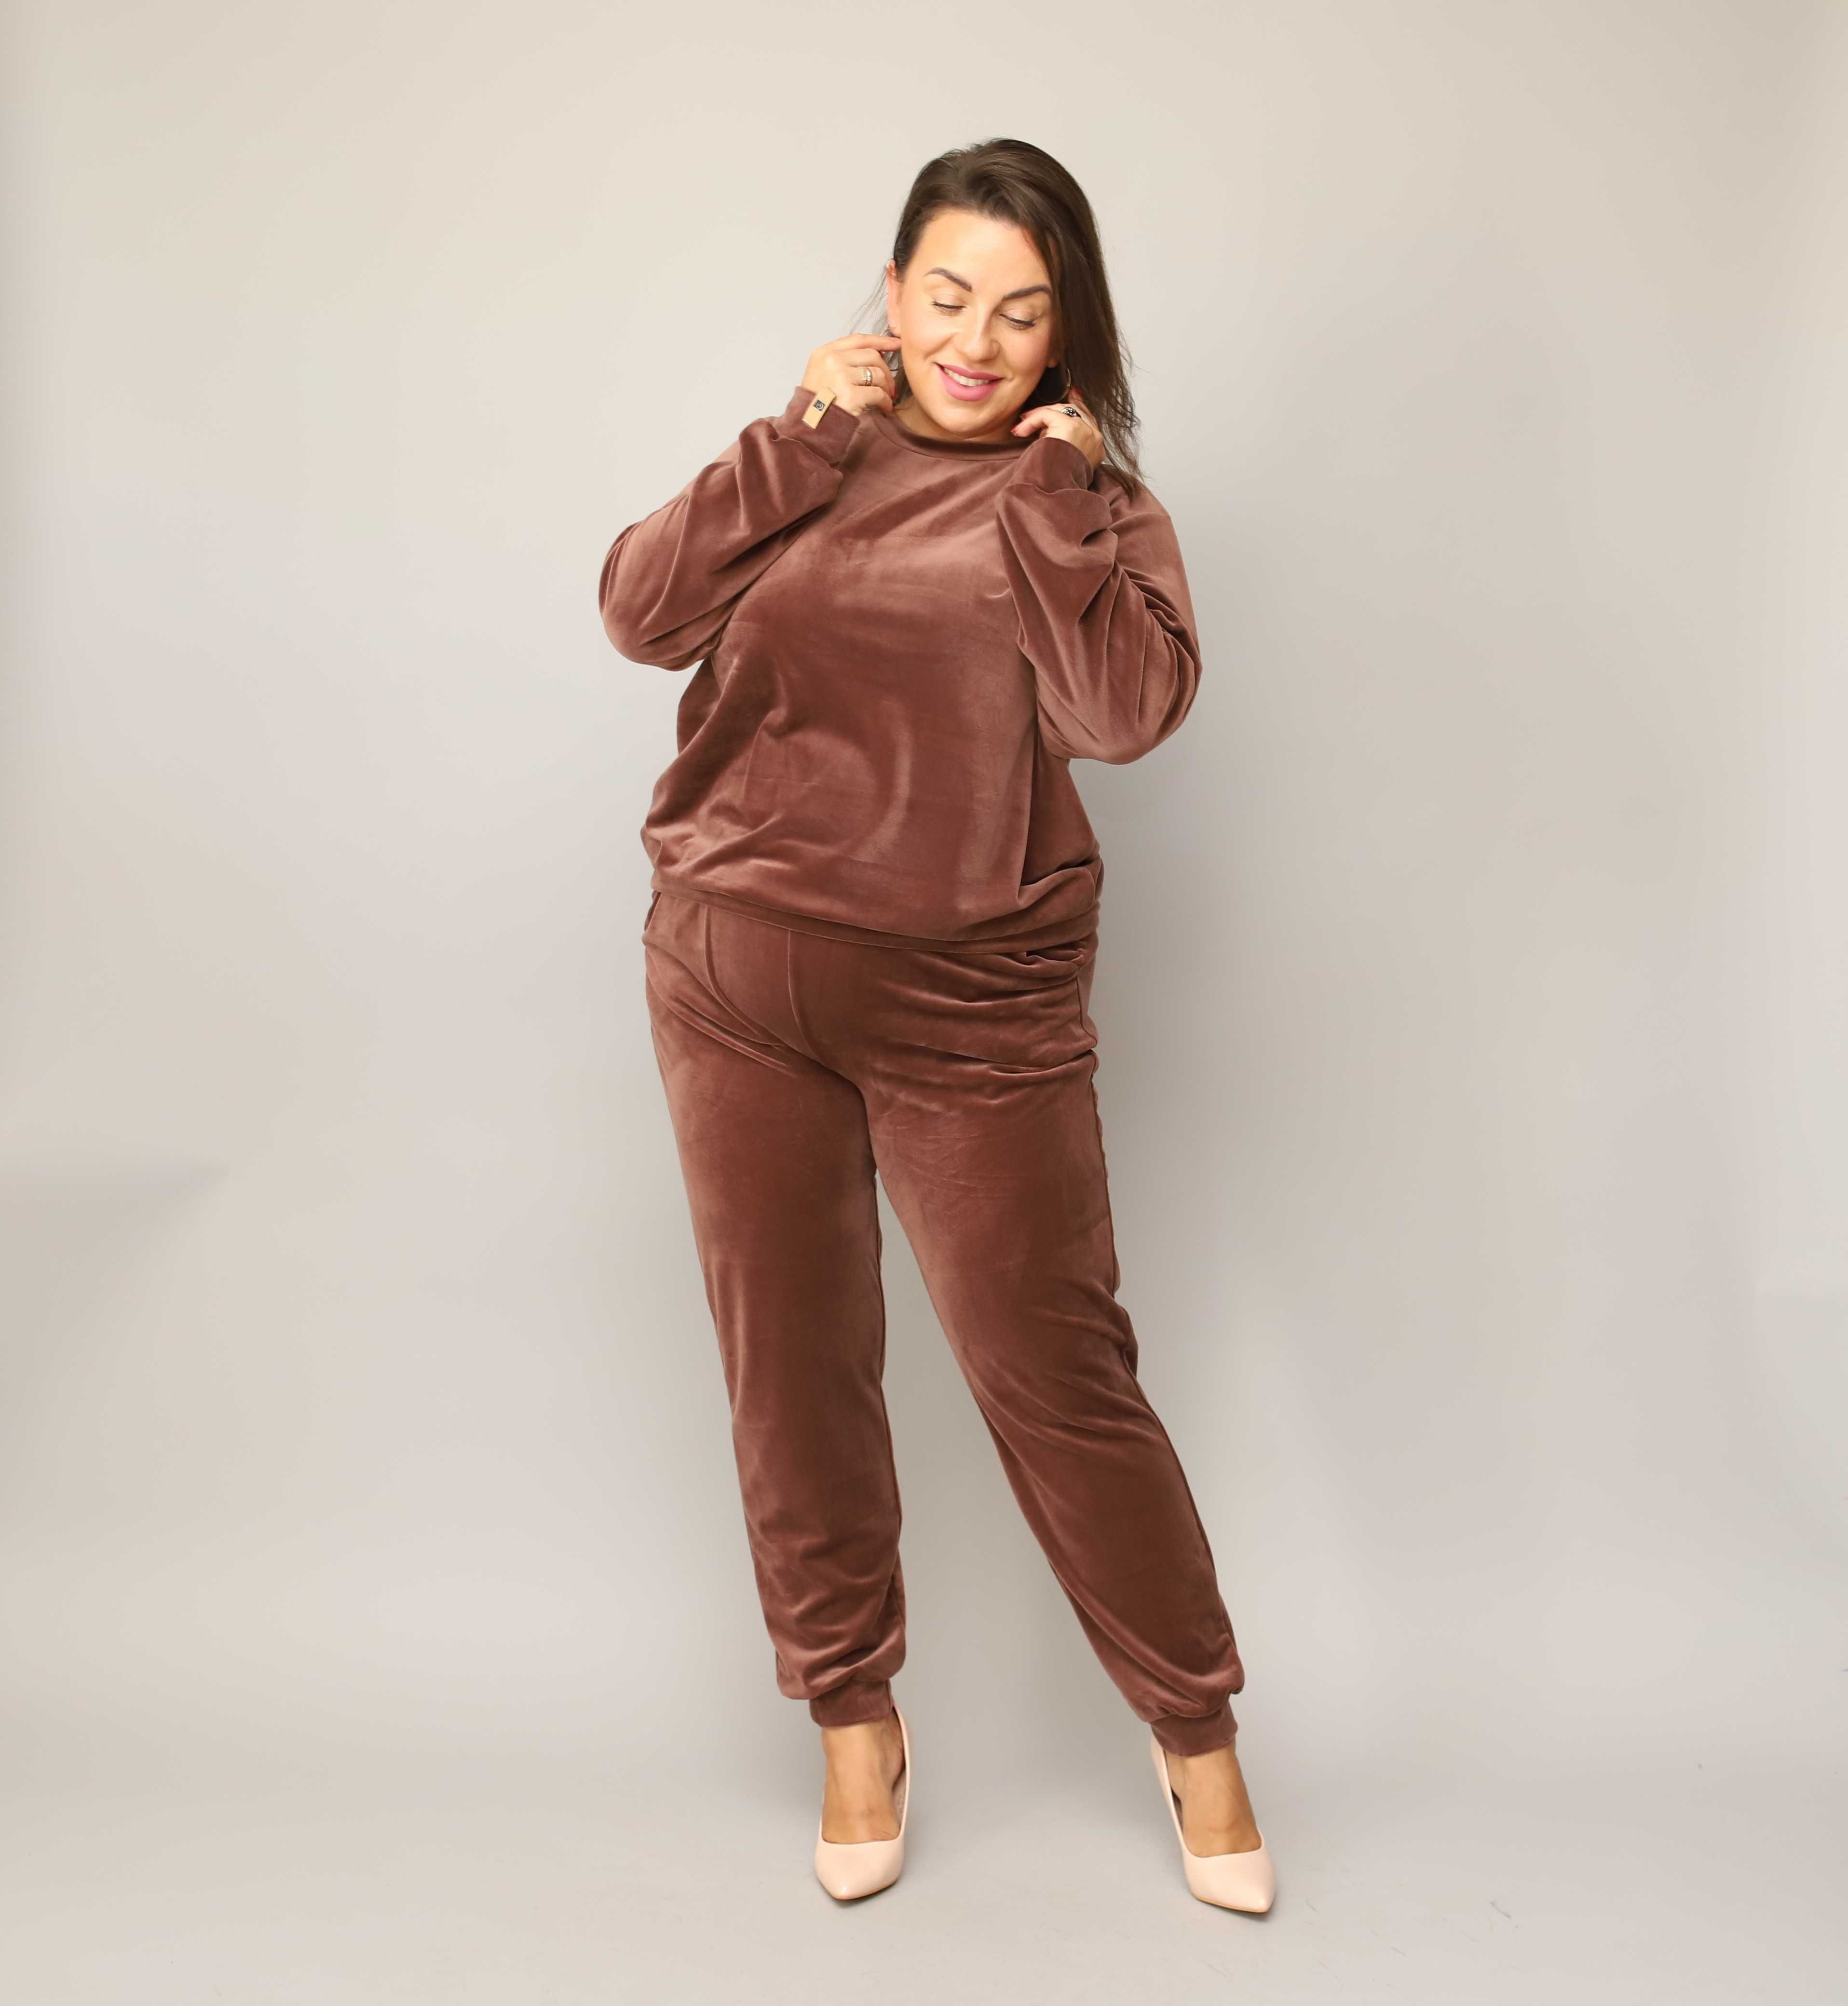 Czekoladowy DRES WELUROWY damski komplet bluza + spodnie JESIEŃ 2XL 44